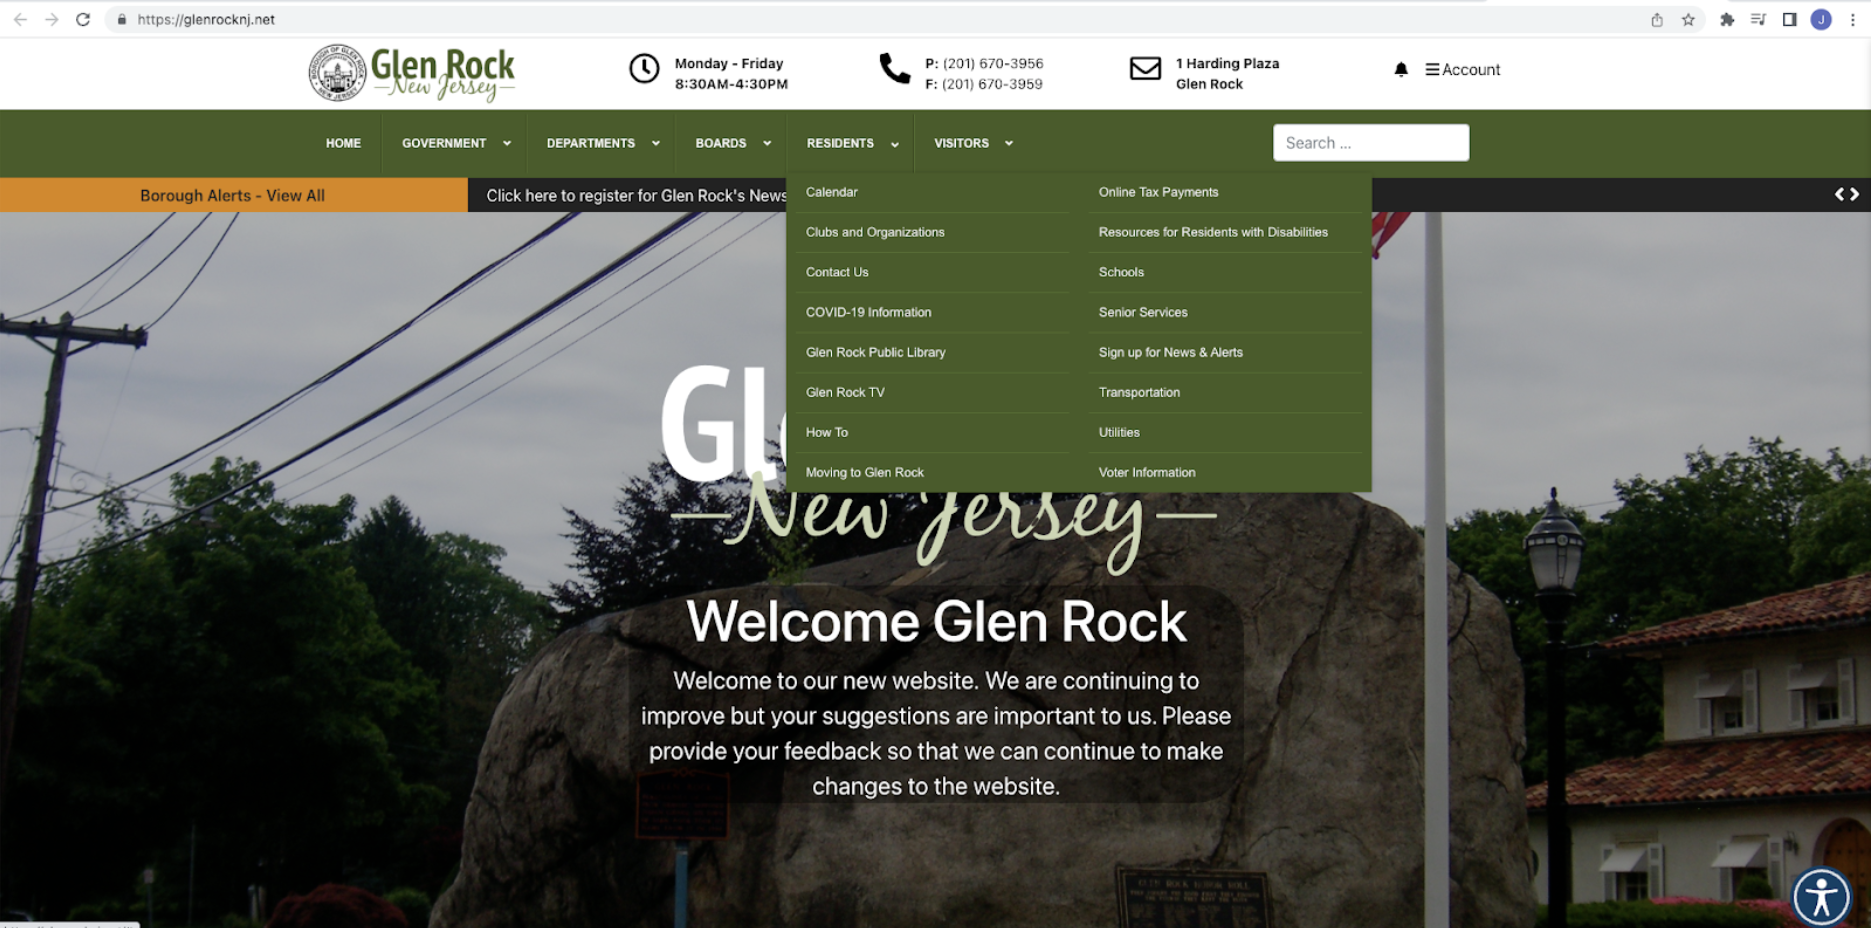 Navigating the Glen Rock municipal website